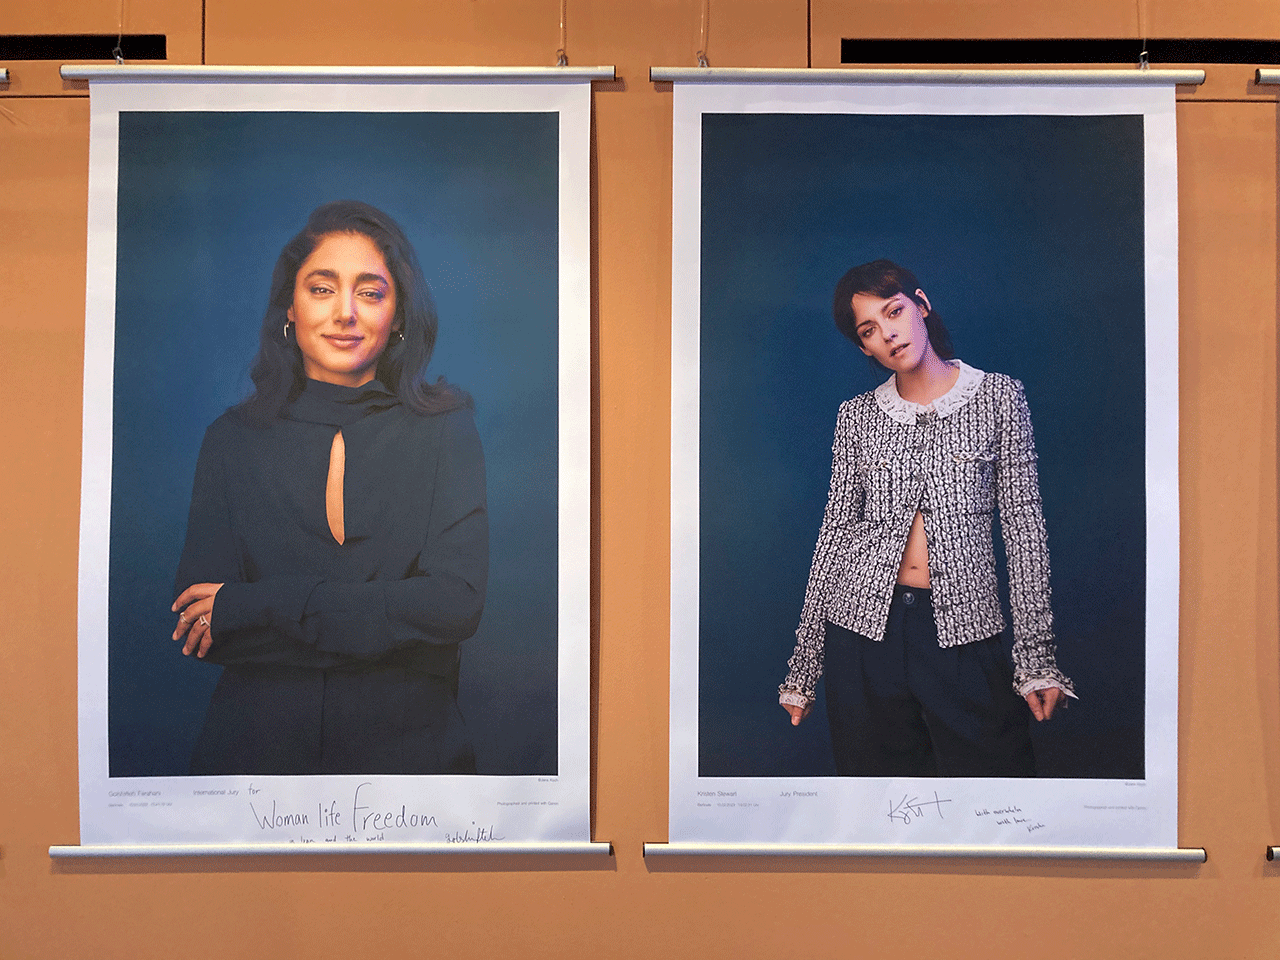 Fotos von Kristen Stewart und Golshifteh Farahani hängen an der Wand